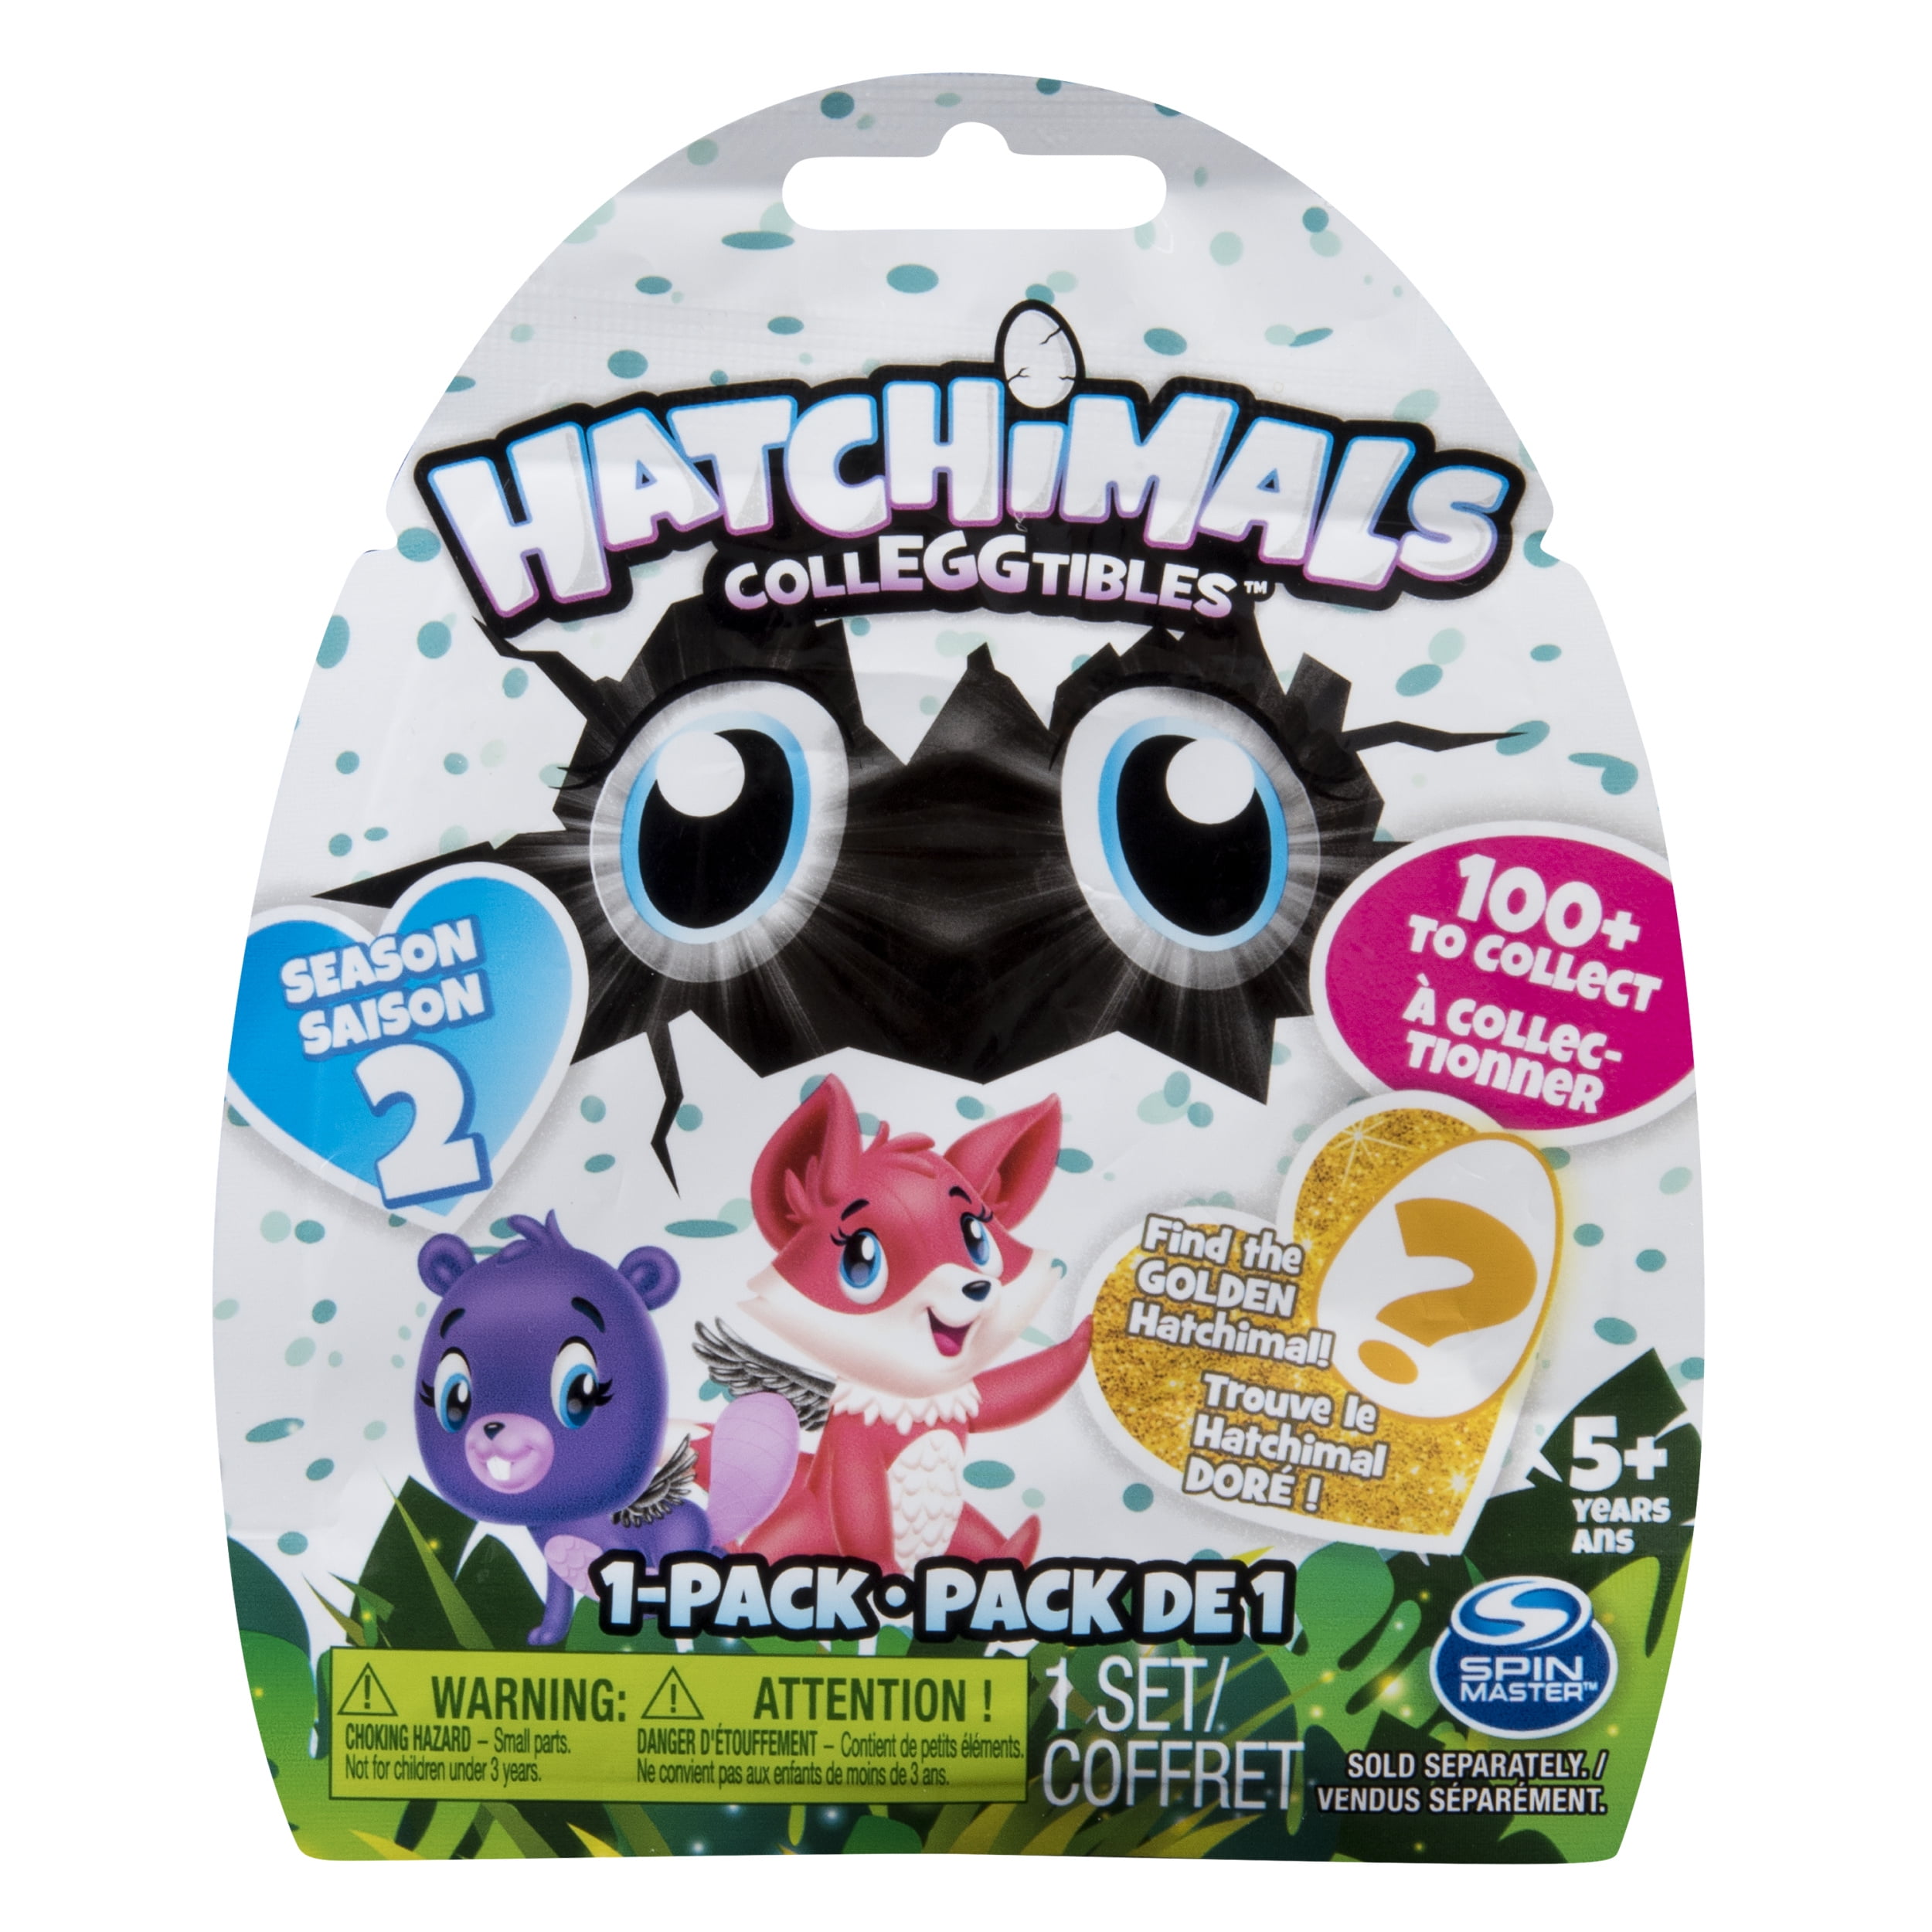 New Hatchimals Colleggtibles Season 2 ---12 Pack Collectible Blue Egg Carton 